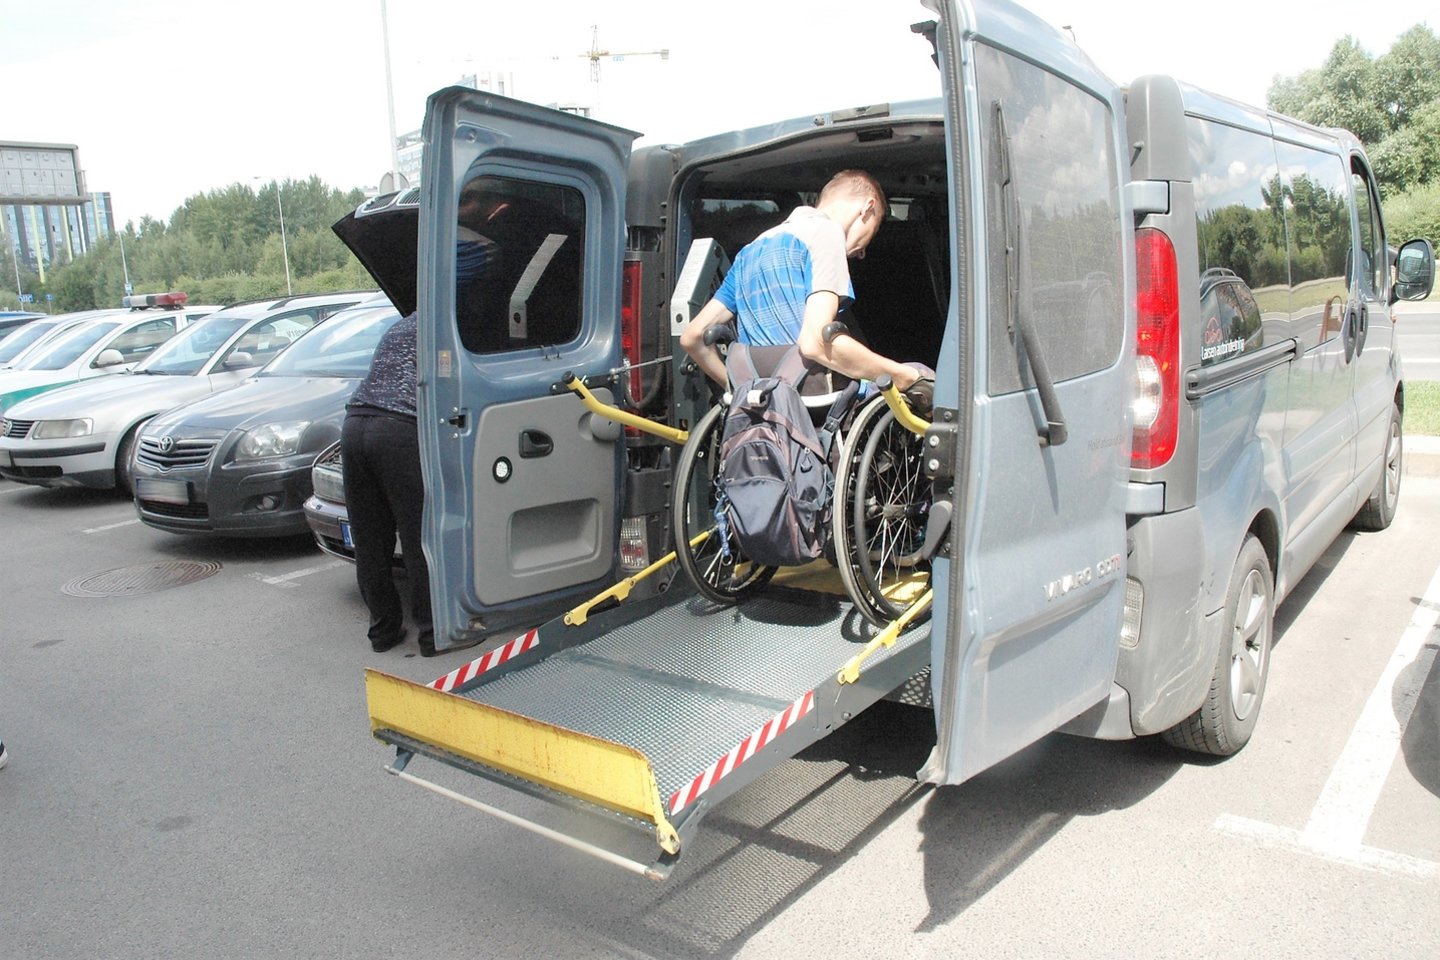  Asociacija „Savarankiškas gyvenimas“ drauge su Vilniaus apskrities policijos komisariatu surengė akciją ir tikrino, ar automobiliai statomi neįgaliesiems skirtose vietose.<br> L. Jakubauskienės nuotr.